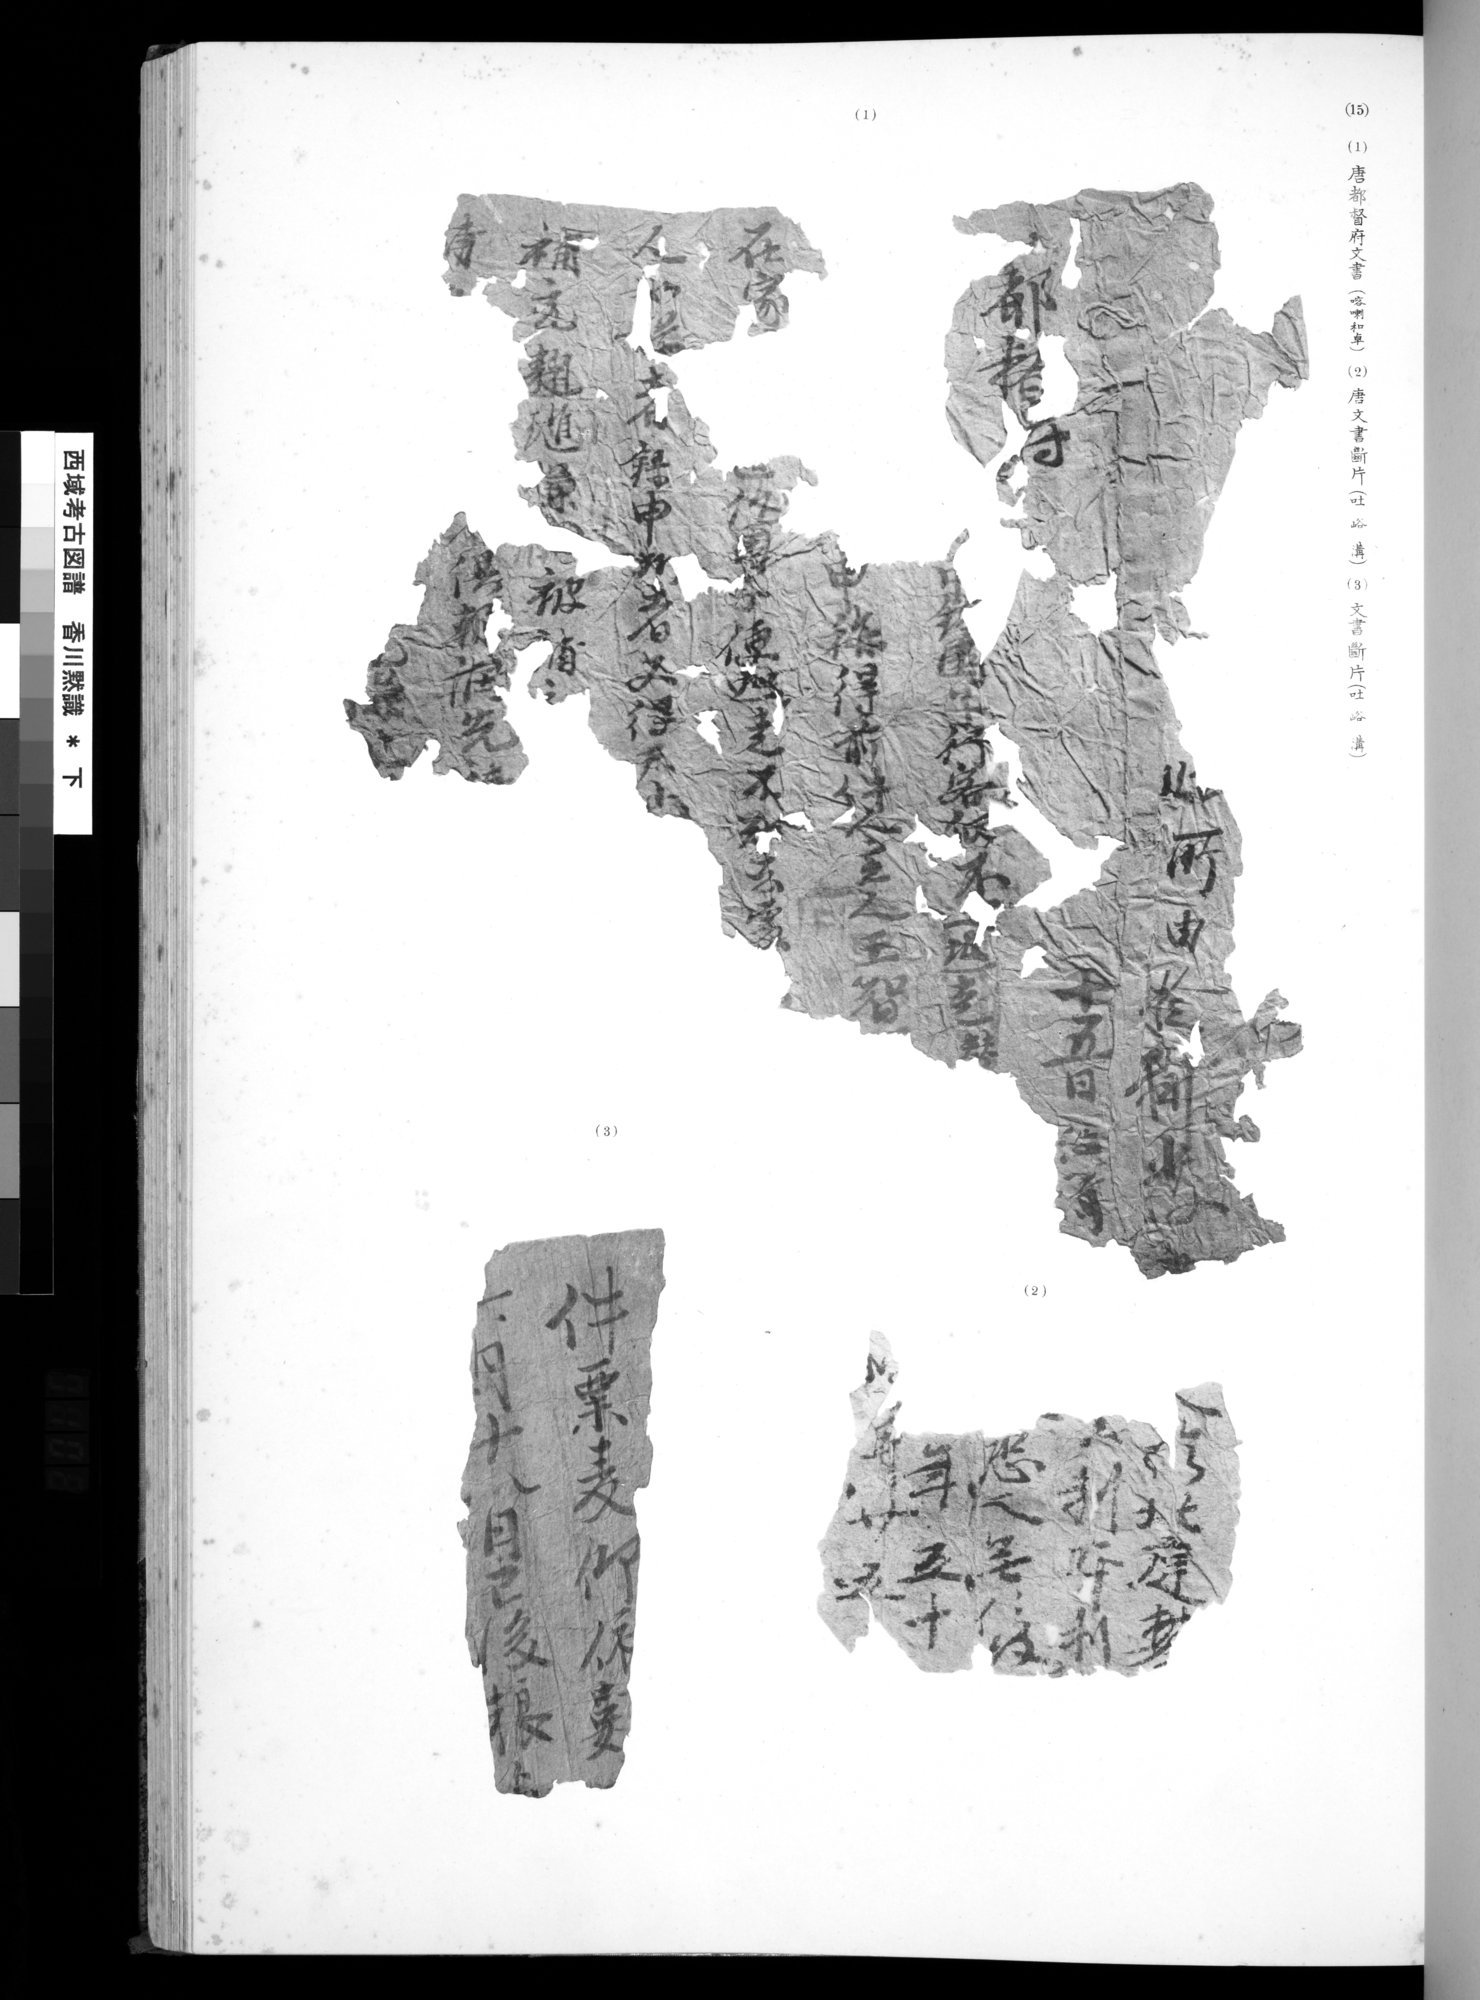 西域考古図譜 : vol.2 / Page 203 (Grayscale High Resolution Image)